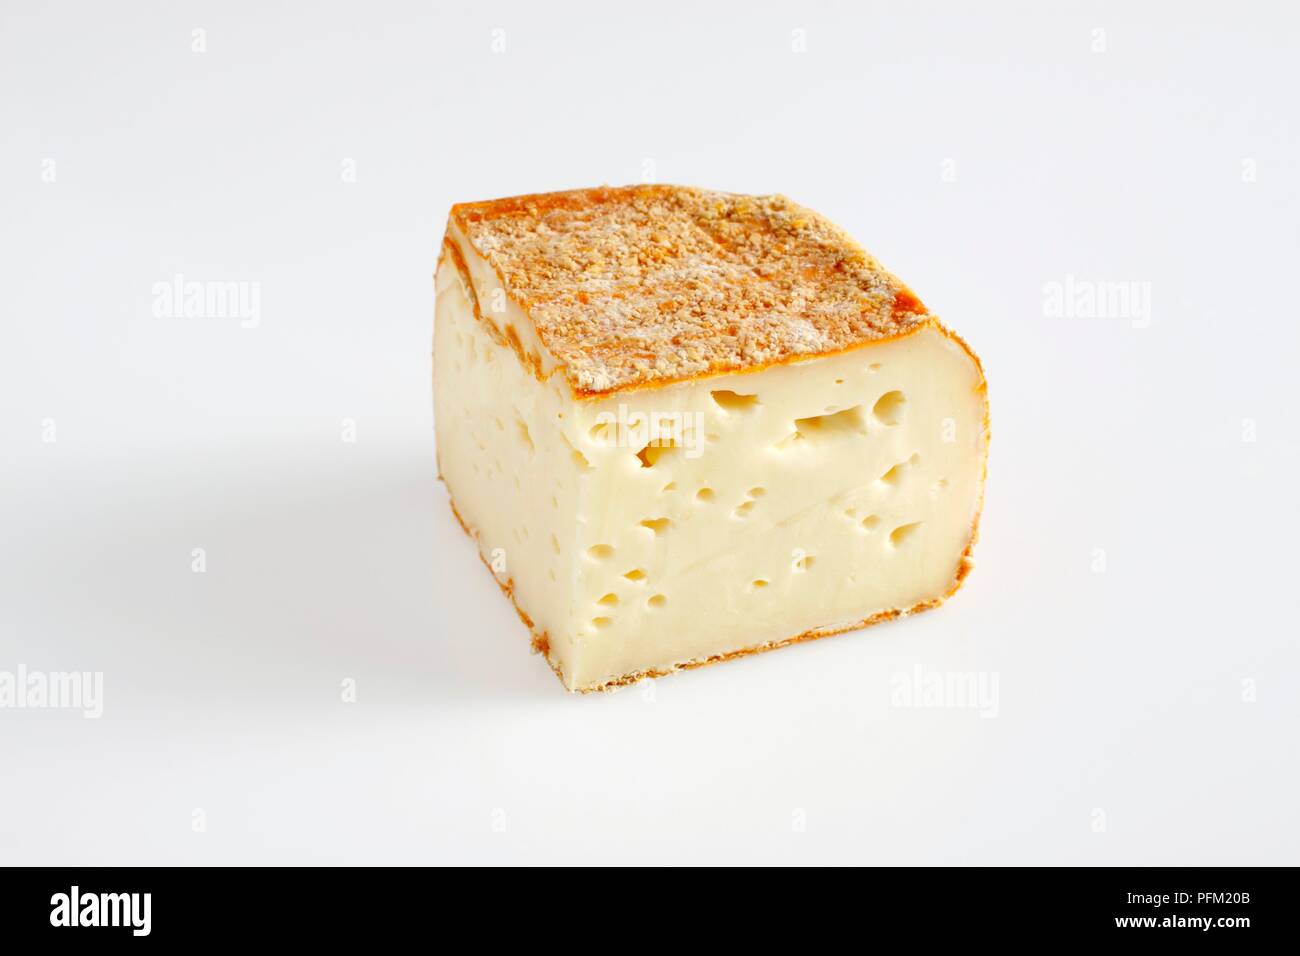 Tranche de sable de Wissant Français fromage au lait de vache de chapelure sur le zeste d'orange Banque D'Images